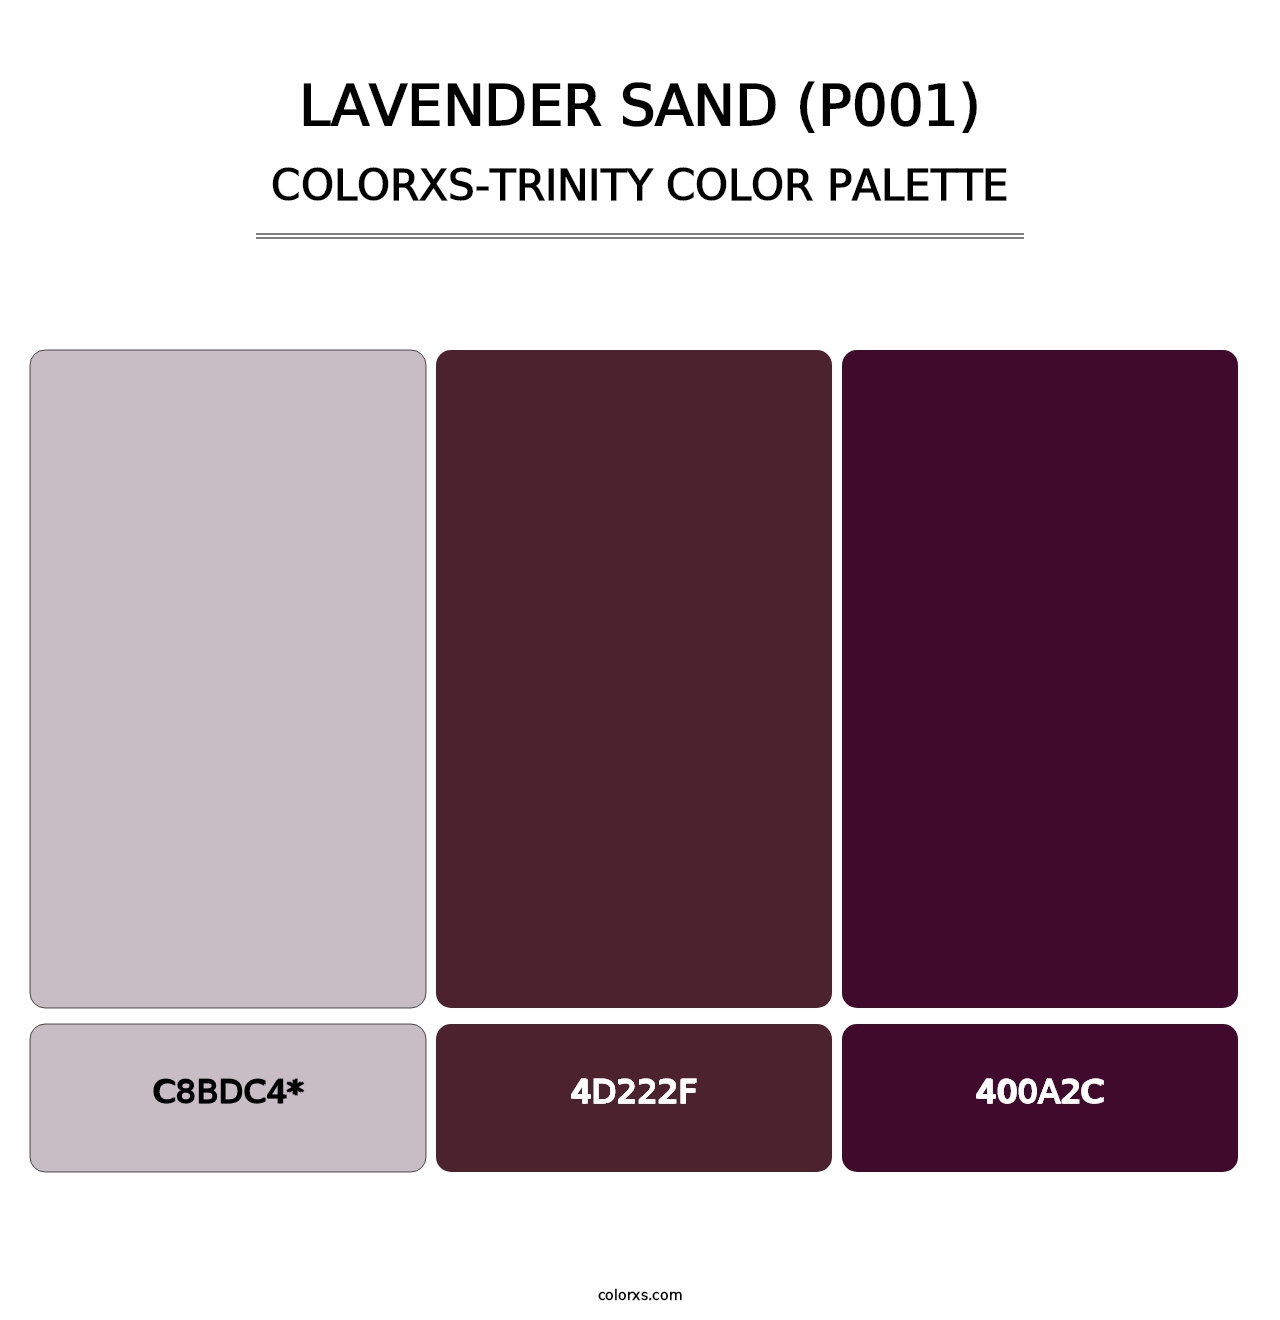 Lavender Sand (P001) - Colorxs Trinity Palette